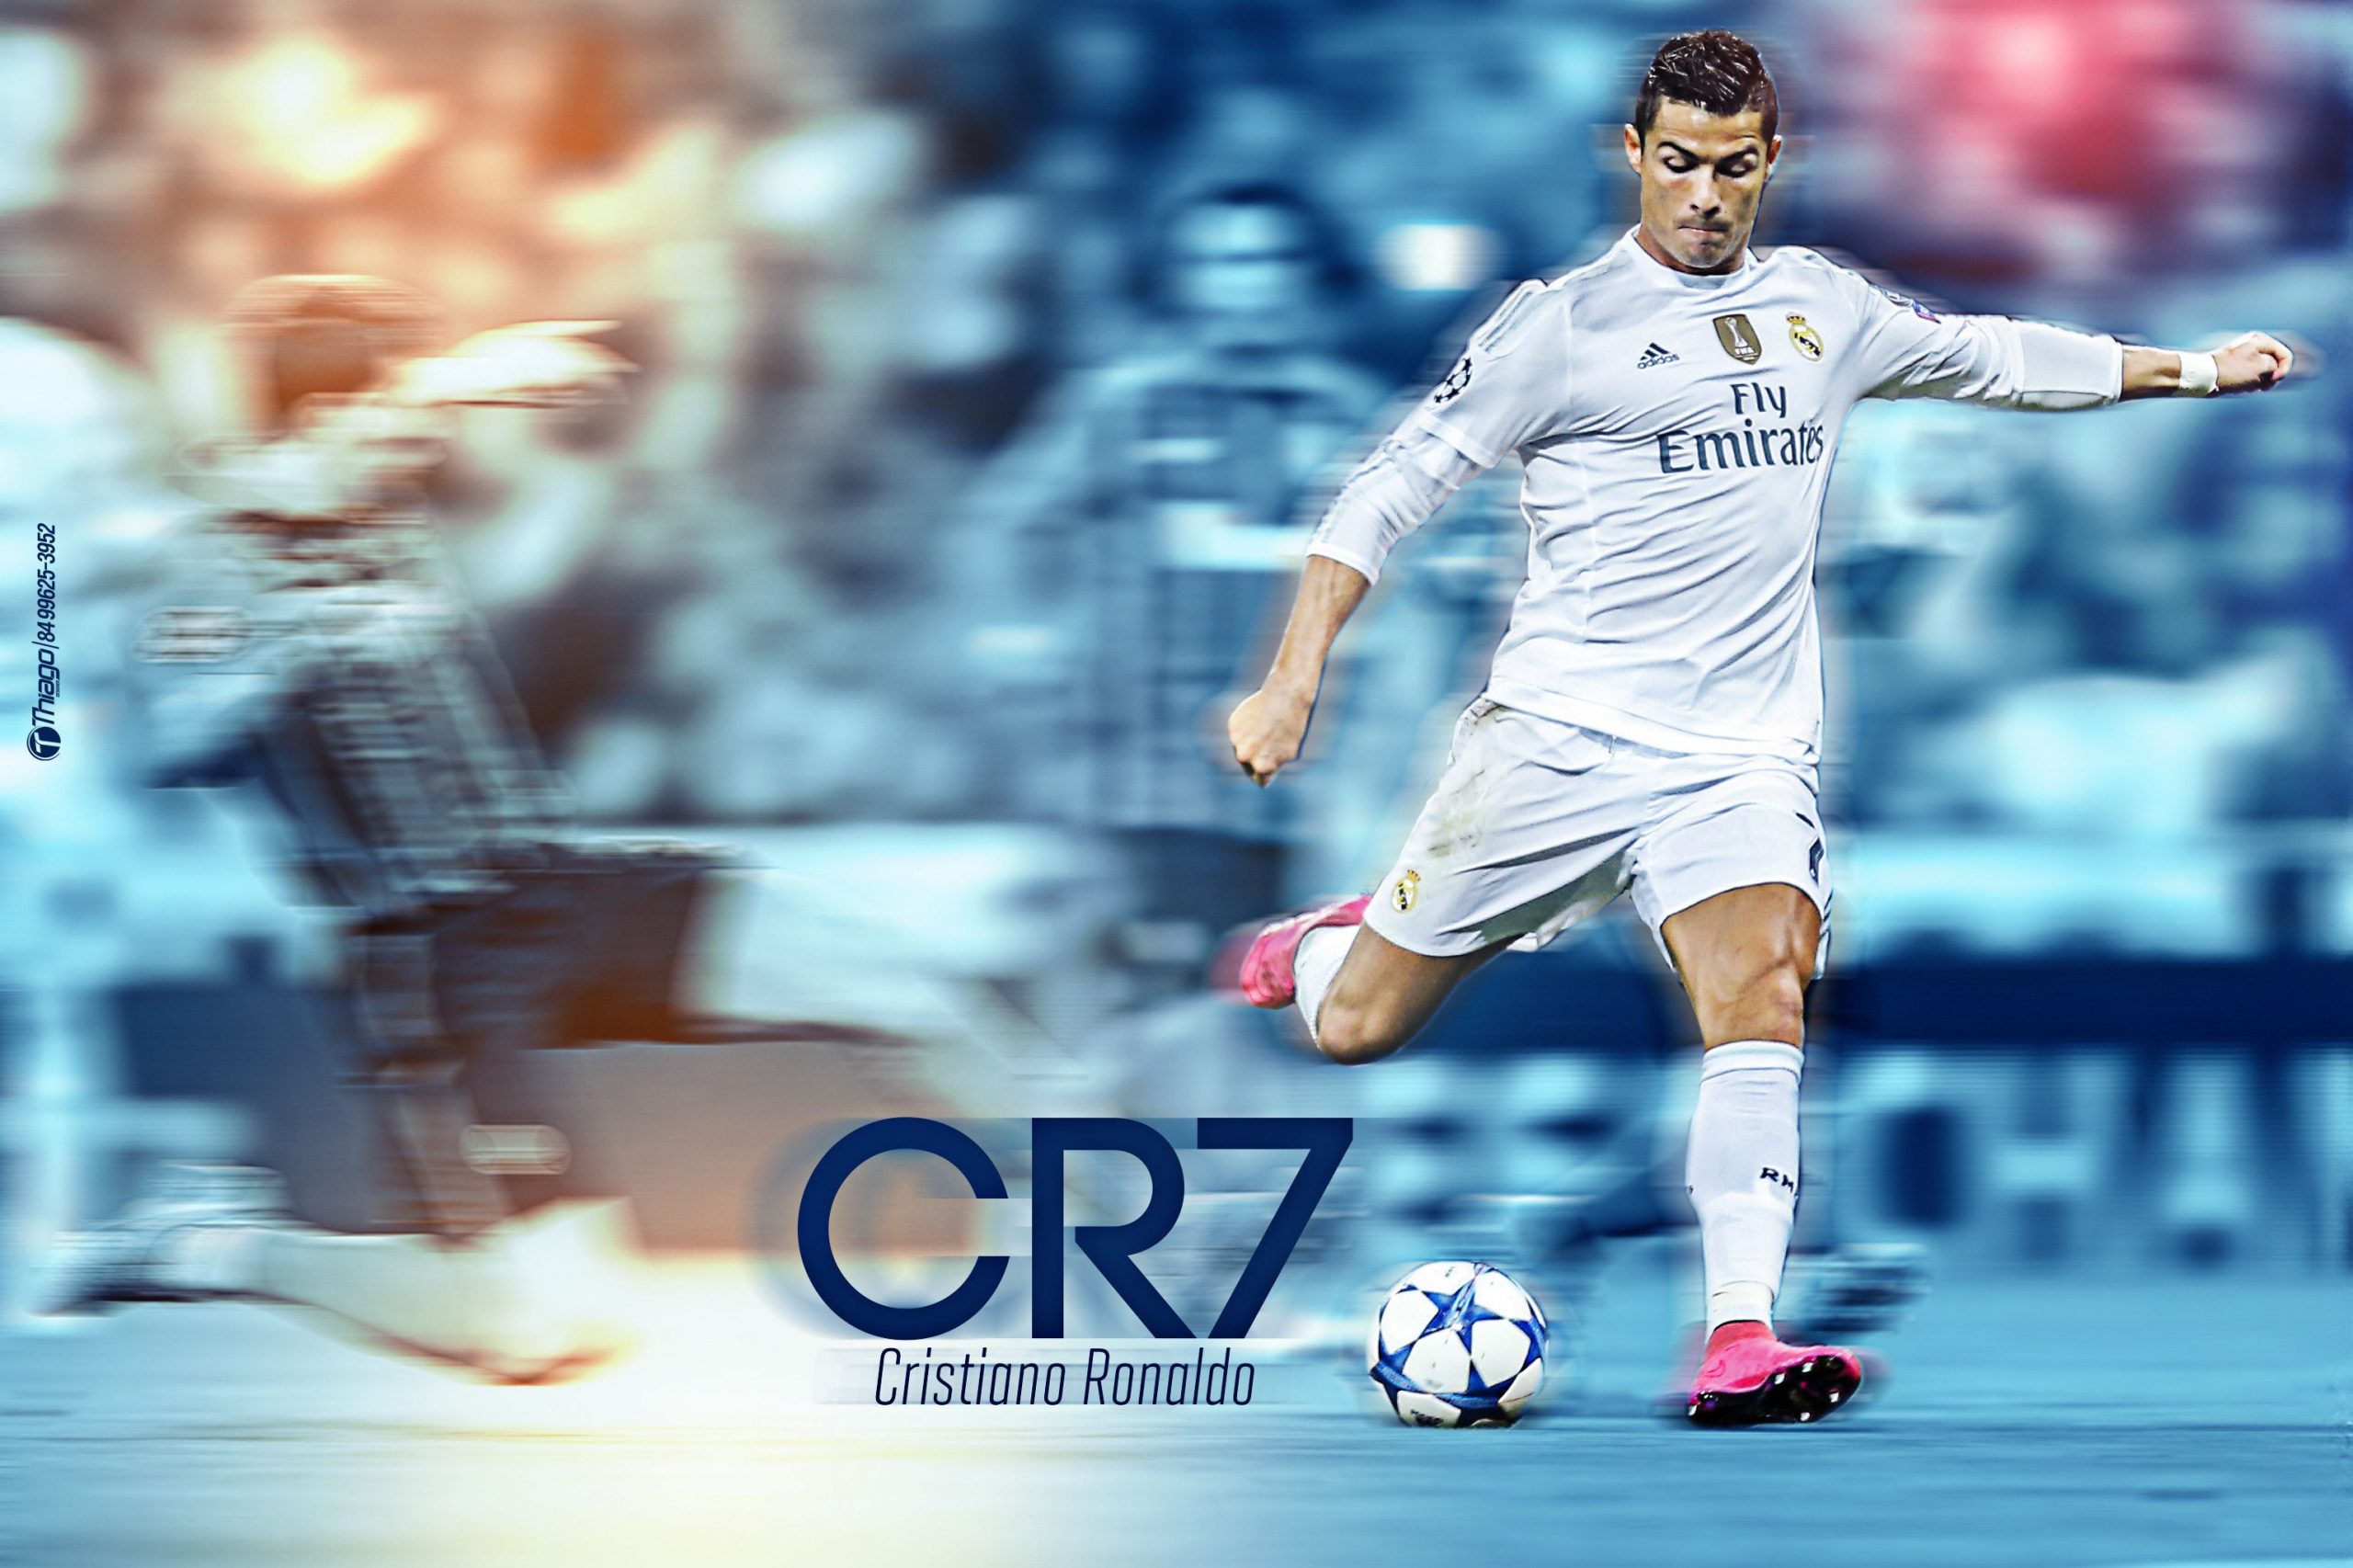 Chia sẻ 100 hình nền đẹp của Cristiano Ronaldo full HD - [Kích thước hình ảnh: 2560x1706 px]